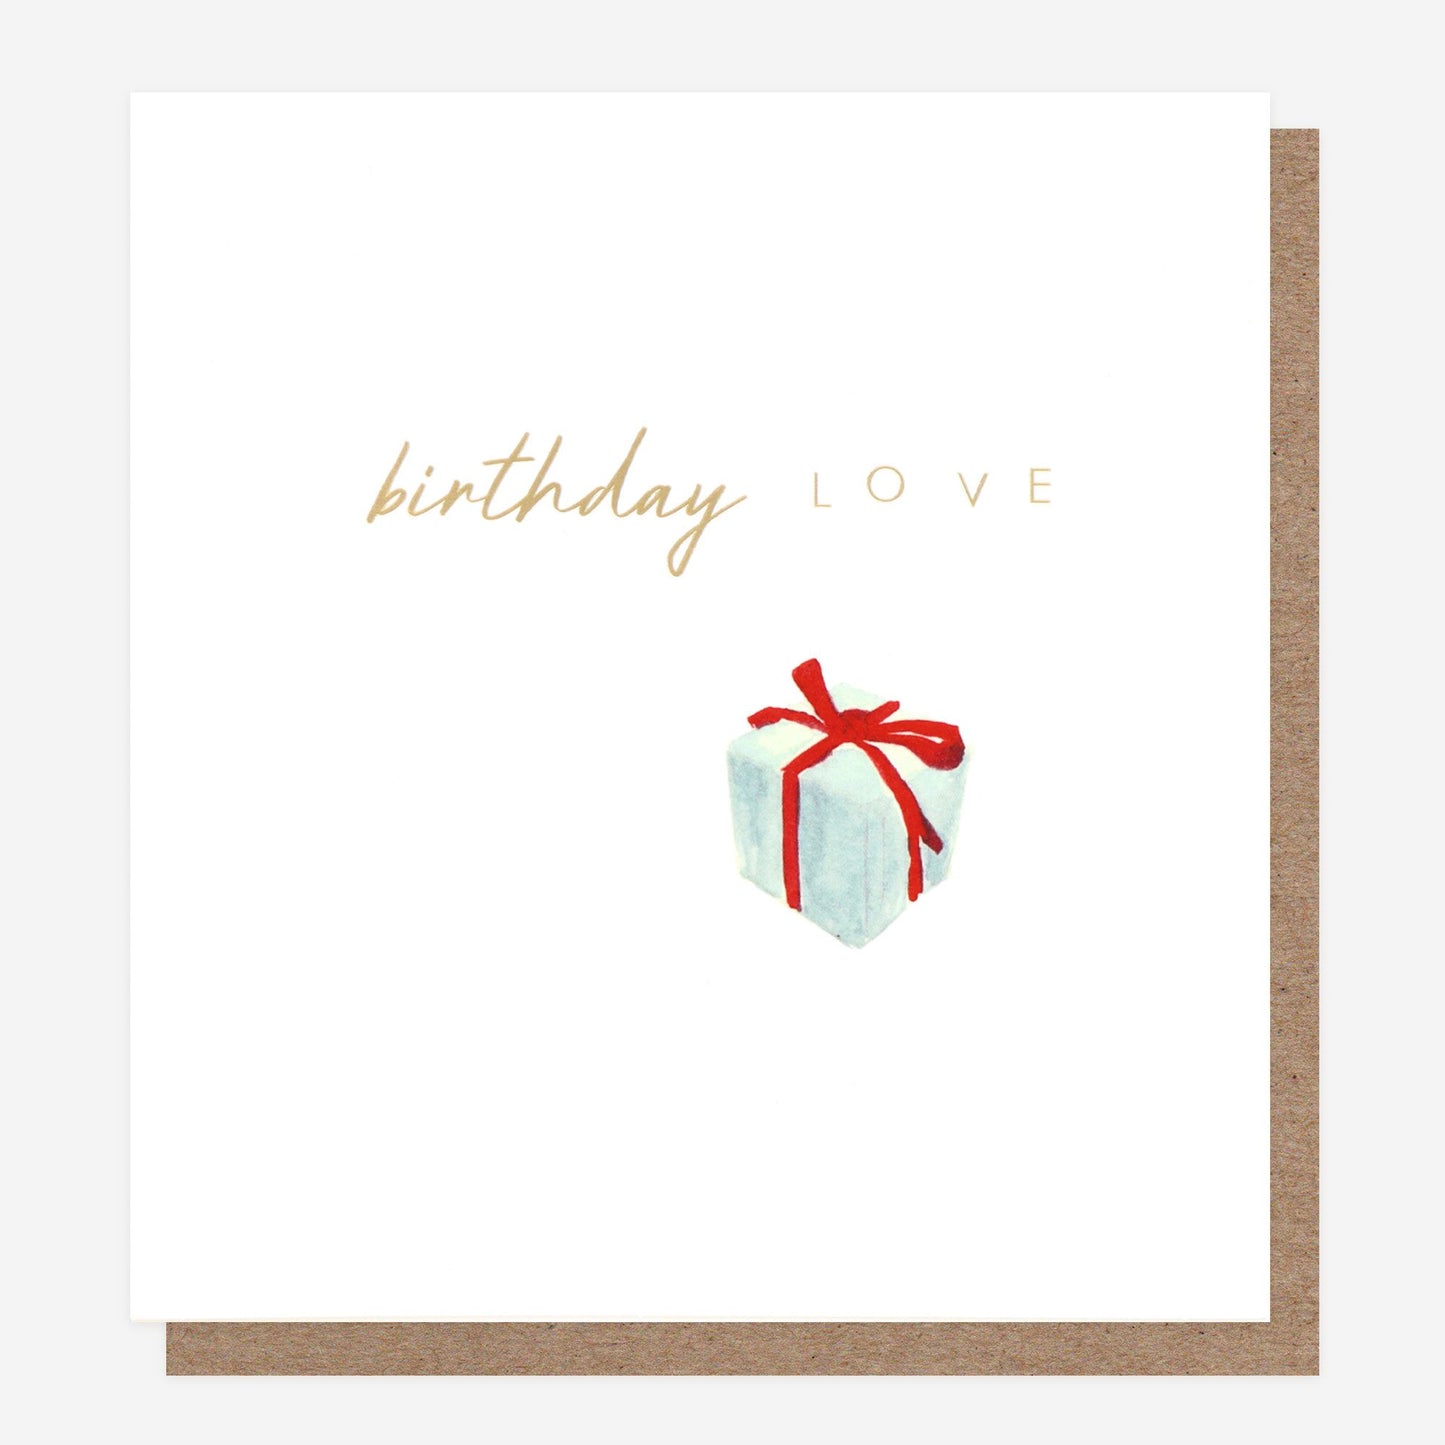 Birthday Love Card